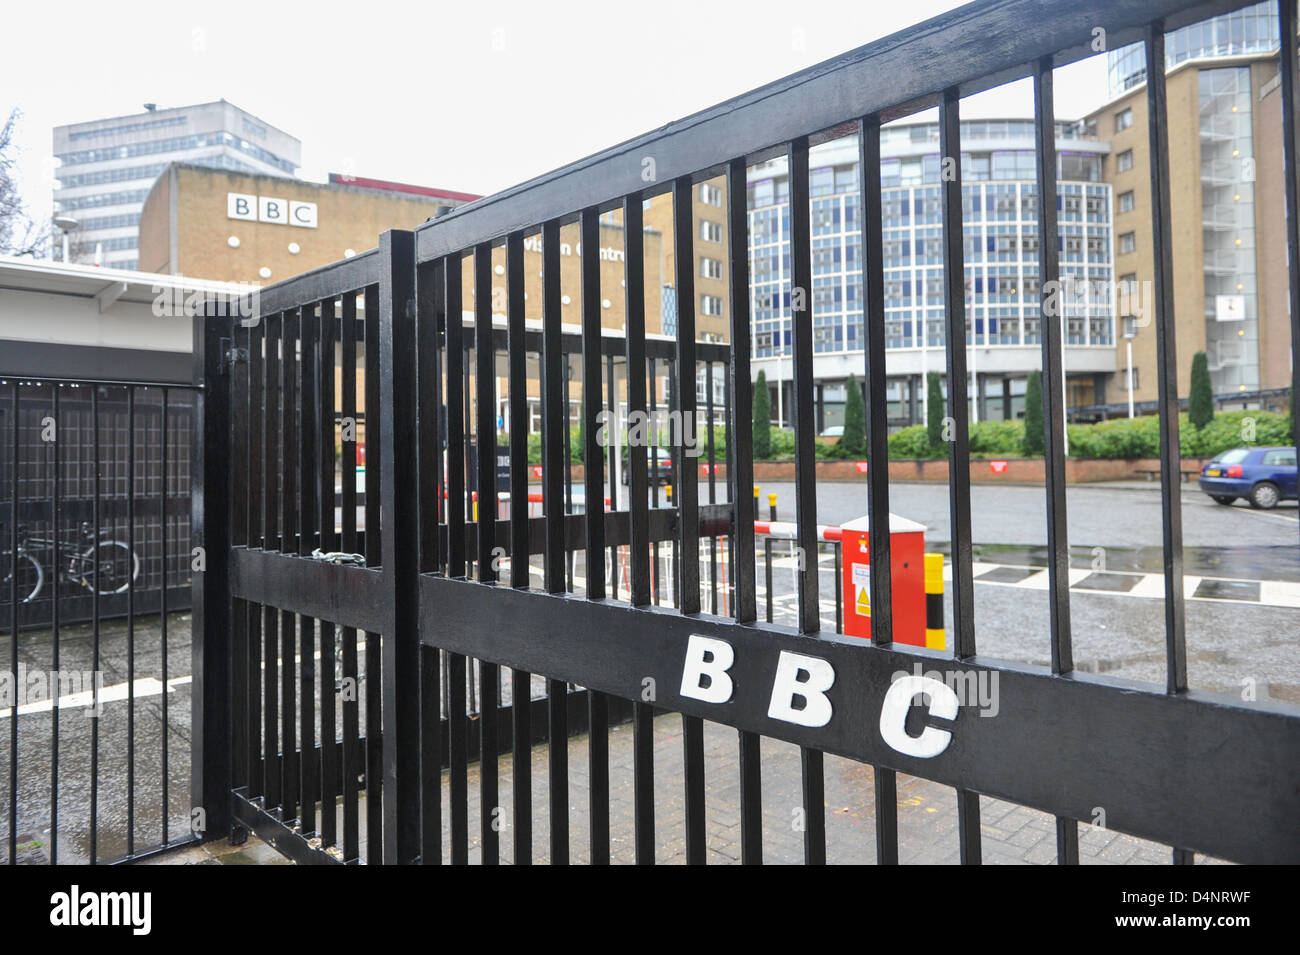 Wood Lane, London, UK. 17. März 2013. Die Tore der BBC TV-Zentrum in Wood Lane. BBC TV-Zentrum bei Wood Lane ist es, dem letzten Rundbrief Sendung heute Abend, mit allen News zog in das neue Gebäude am Broadcasting House im Zentrum von London, Fernsehzentrum, war im vergangenen Jahr für 200 Mio. Pfund verkauft, schließt am 31. März und werden in Hotels, Wohnungen, ein Kino und Büroflächen saniert werden. Die wichtigsten Fernsehstudios werden bewahrt und renoviert und vermietet an Produktionsfirmen, darunter die BBC, ab 2014. Stockfoto